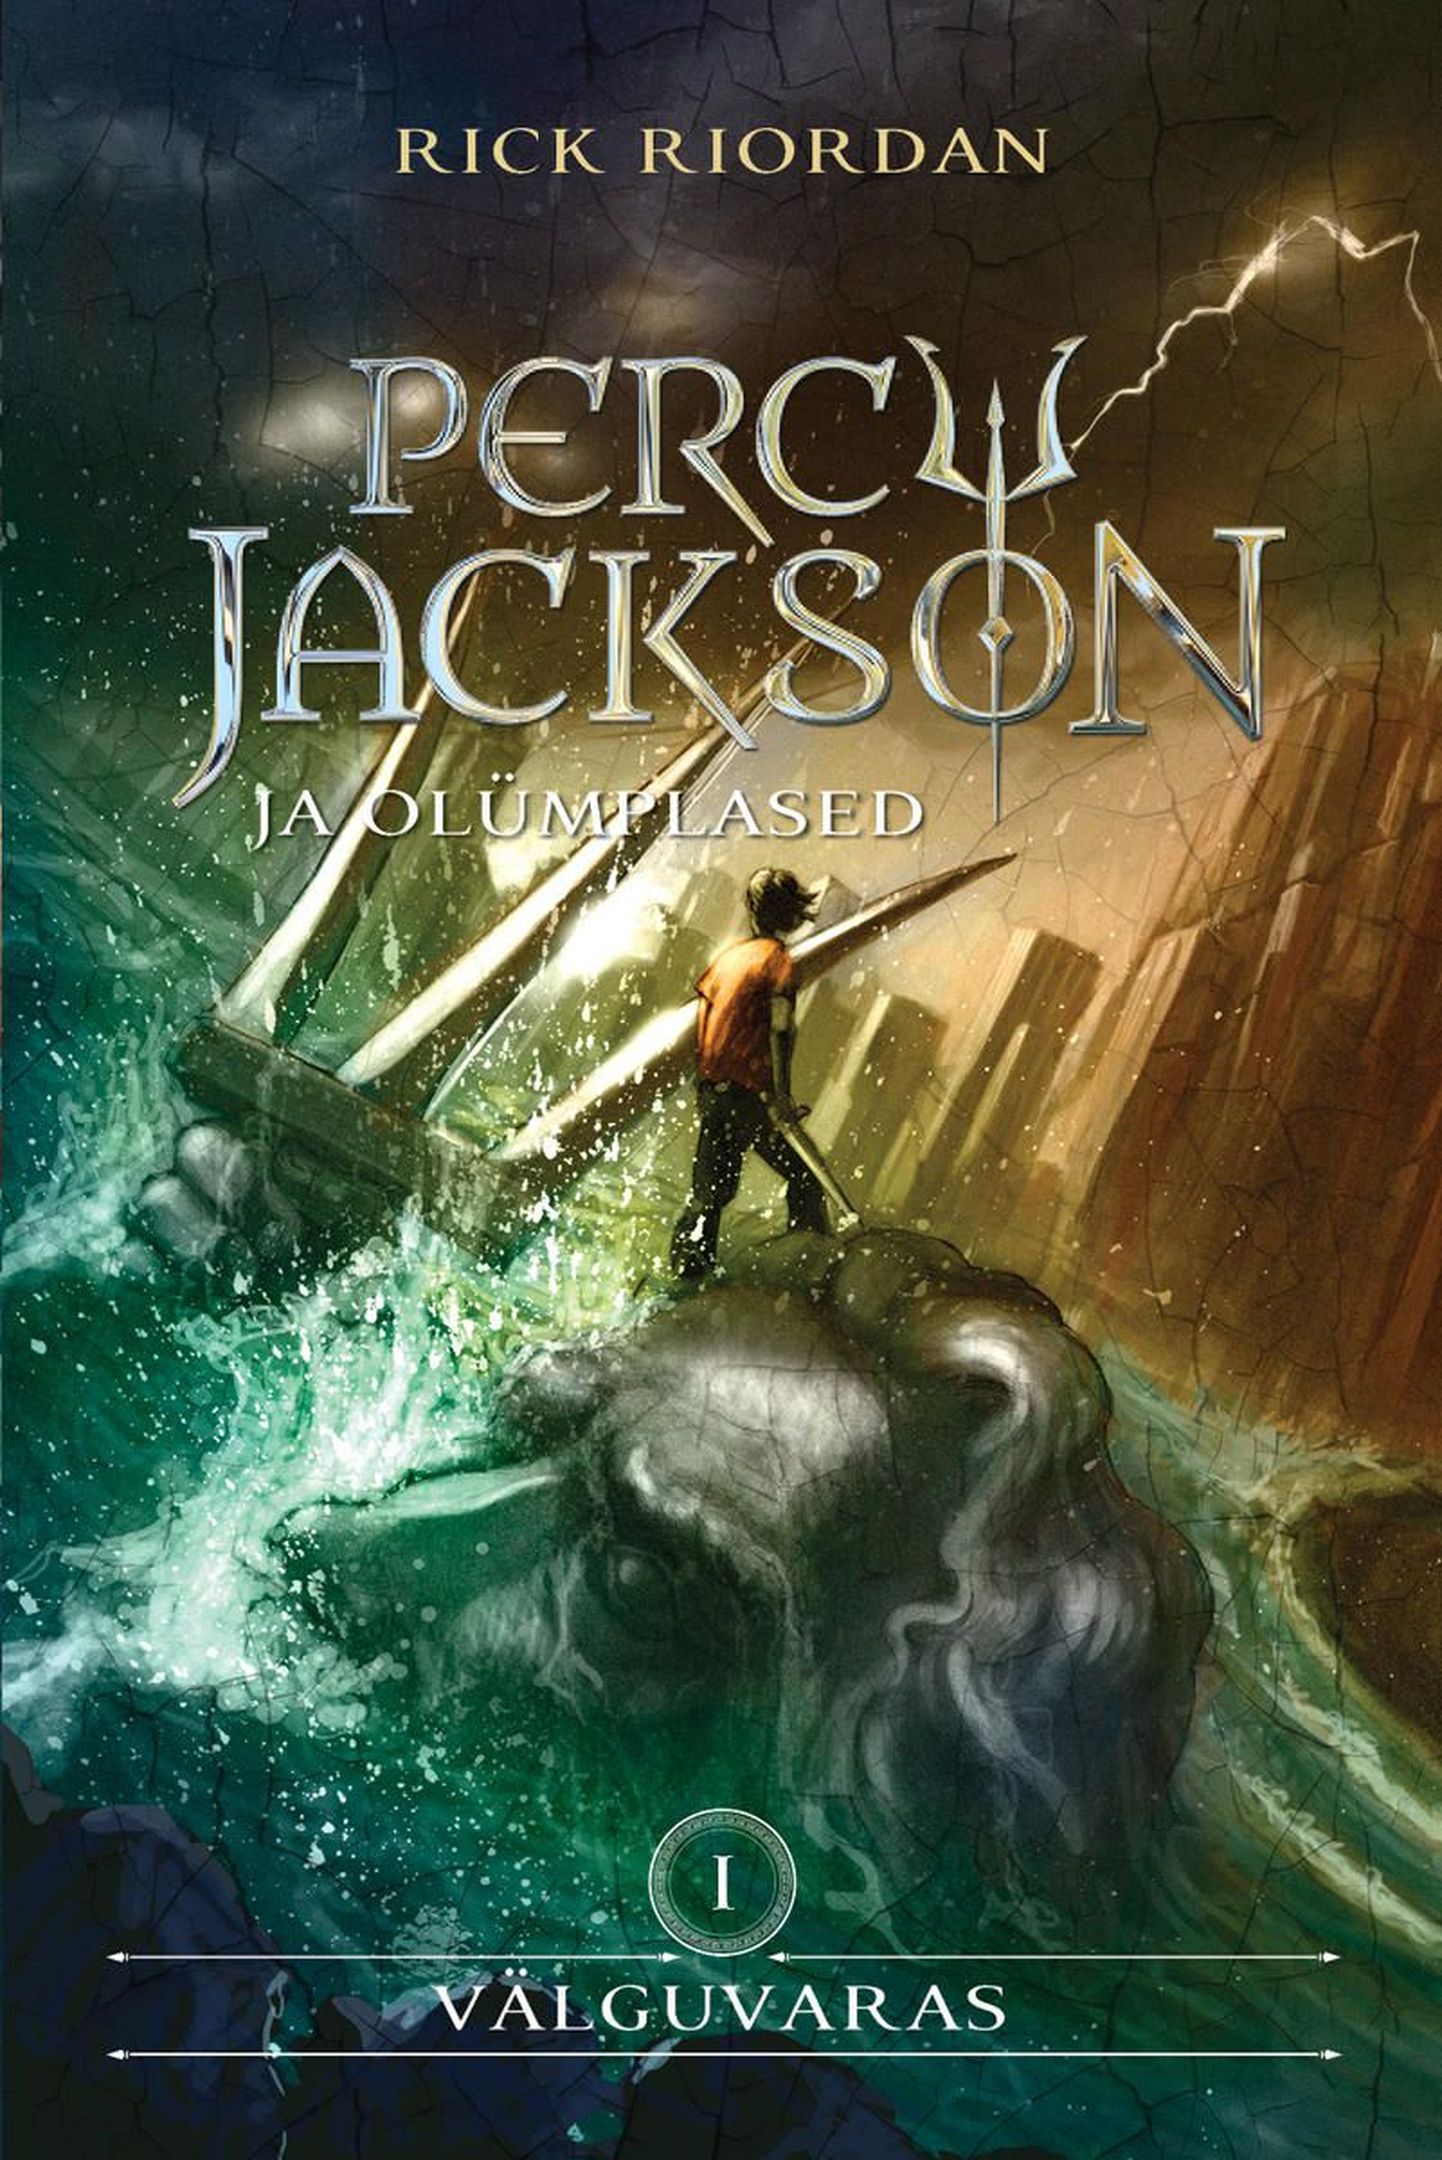 Rick Riordan «Percy Jackson ja välguvaras»